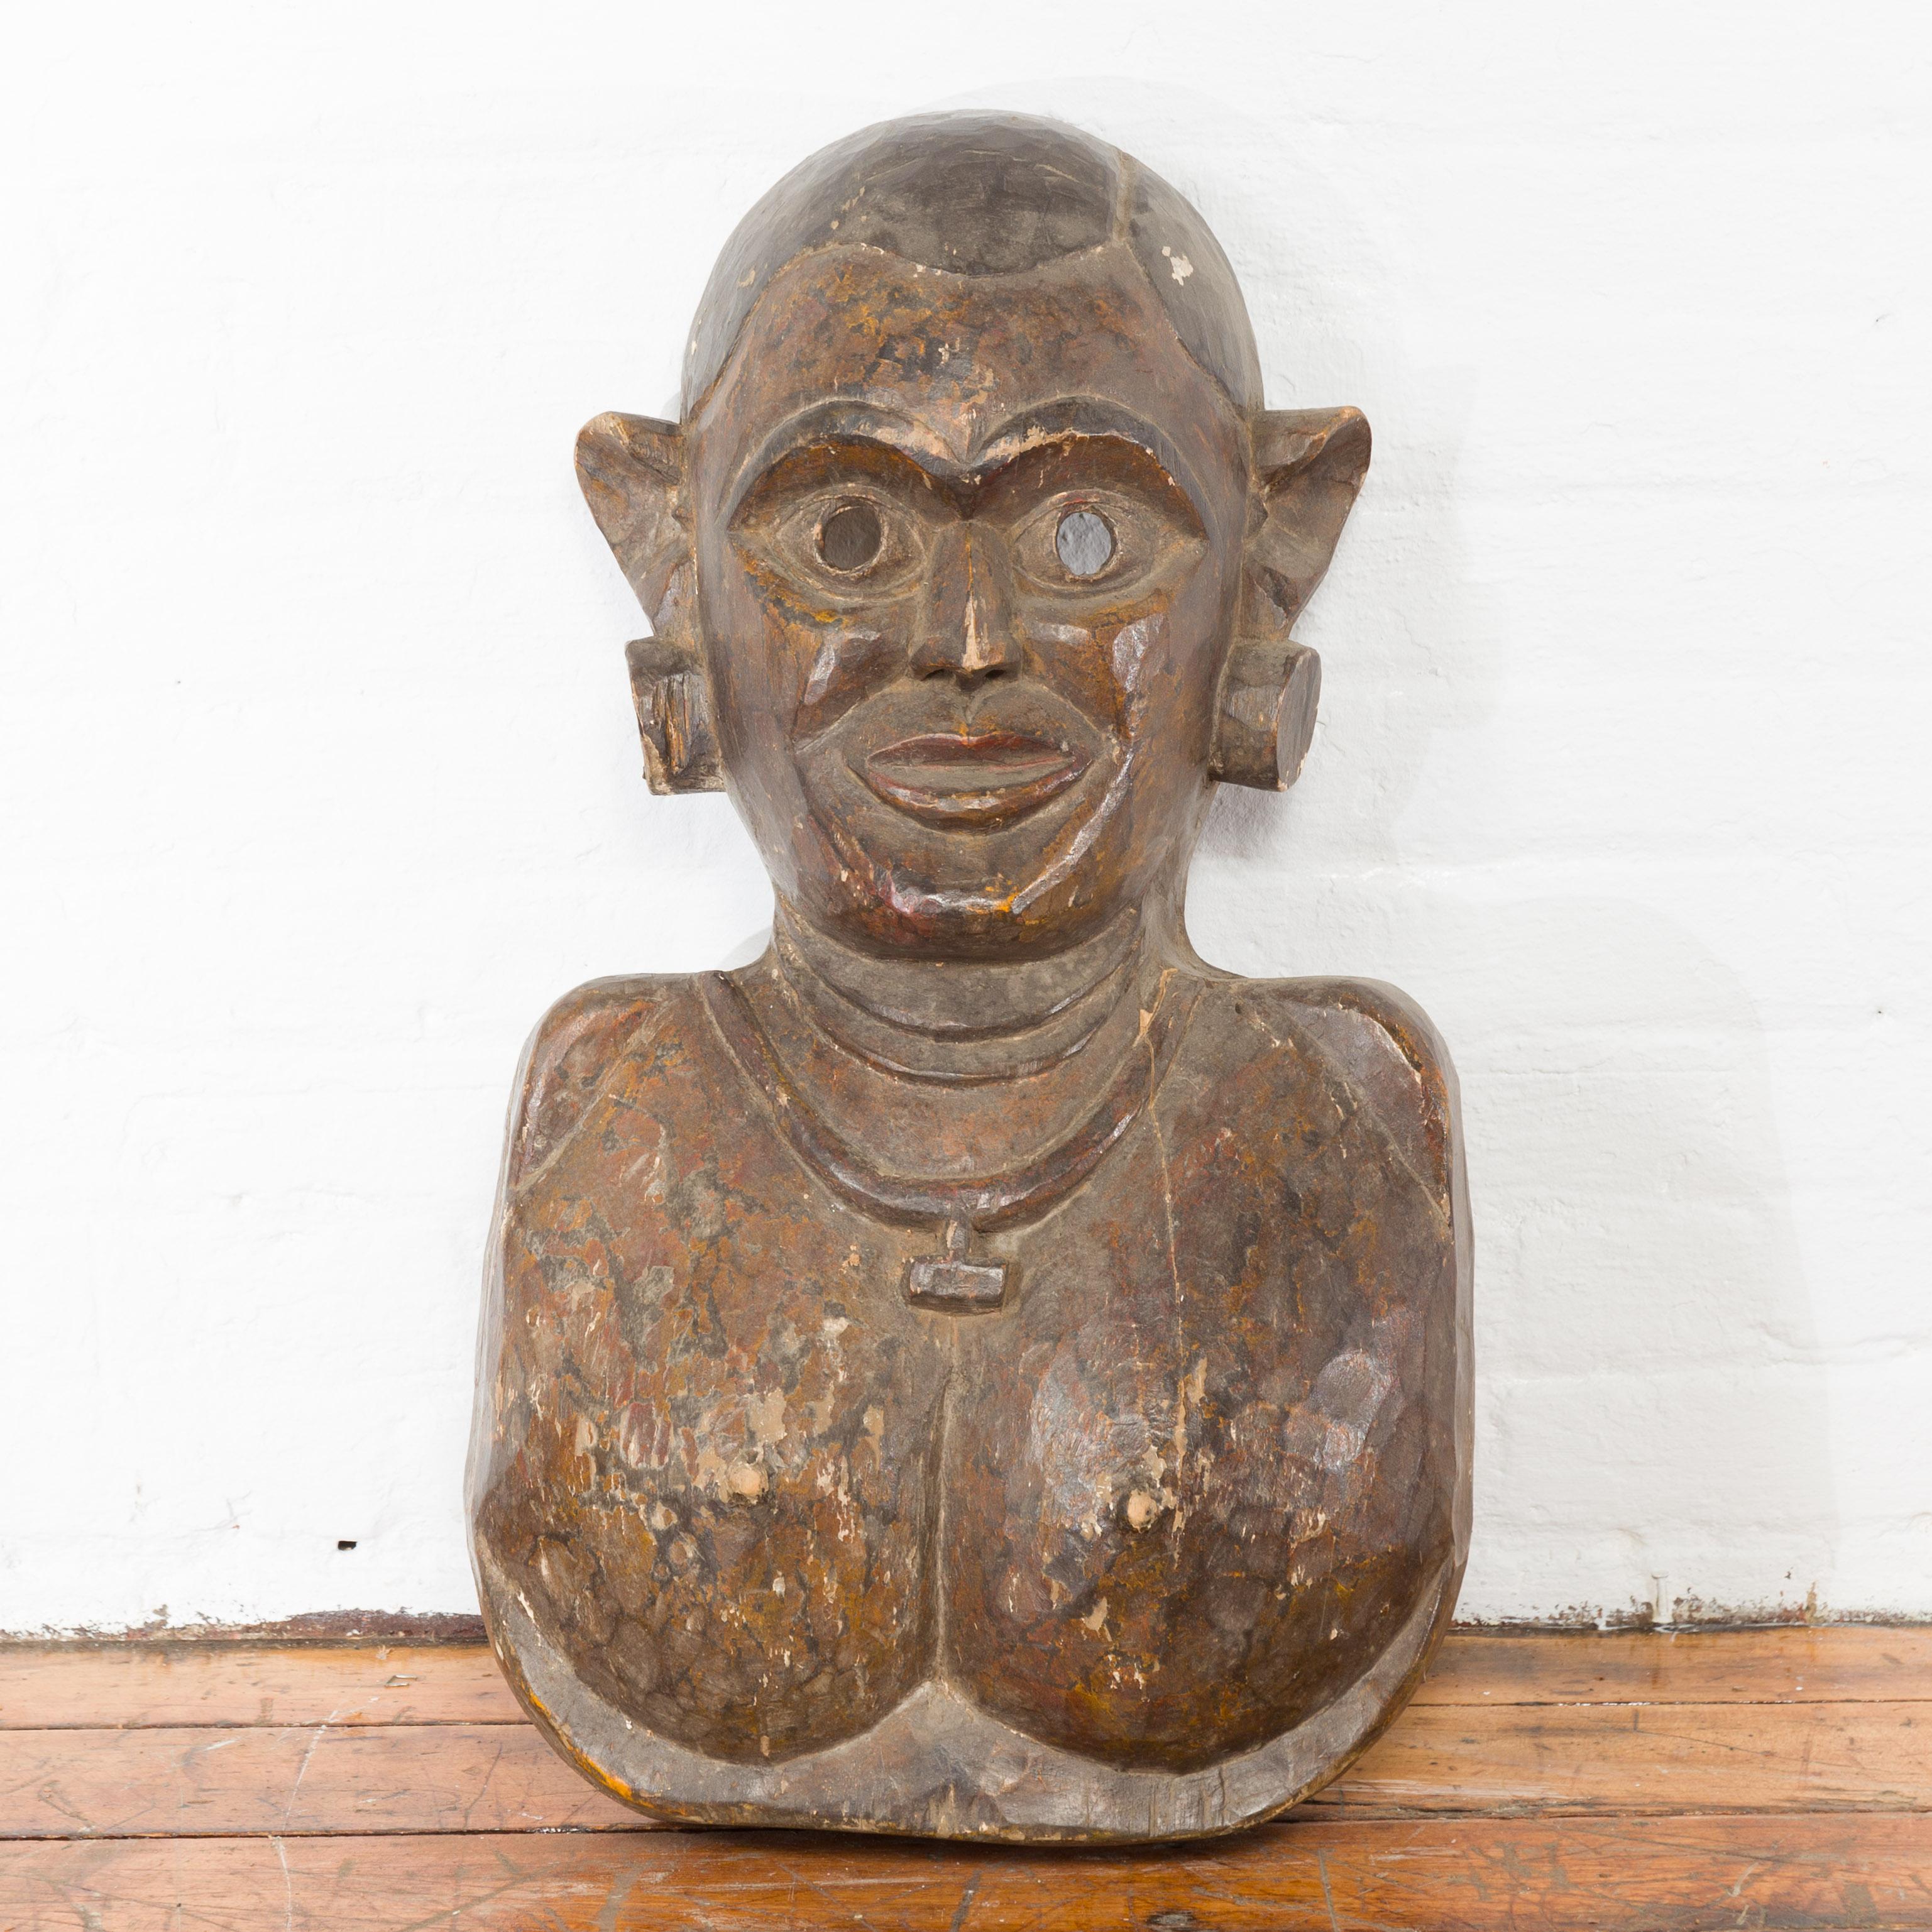 Notre masque de cérémonie antique en bois du XIXe siècle provient de Jaipur, la capitale du Rajasthan, en Inde. Le masque en forme de buste représente la femme à partir de la poitrine, avec de grandes boucles d'oreilles et un collier, tandis que ses